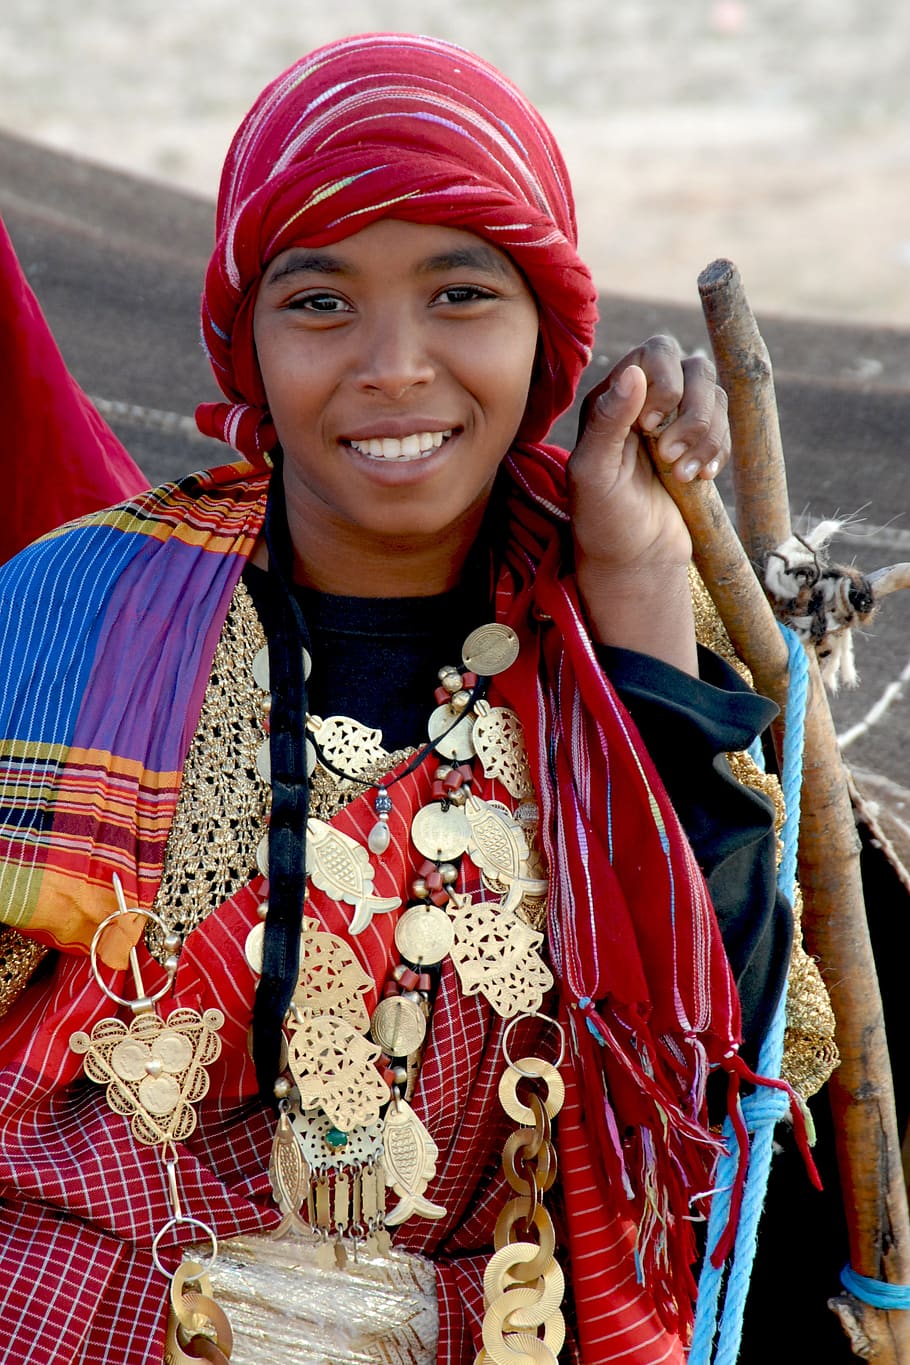 Túnez, mujer, joyería, cultura, amigable, tradicionalmente, sonriendo, mirando a la cámara, una persona, retrato